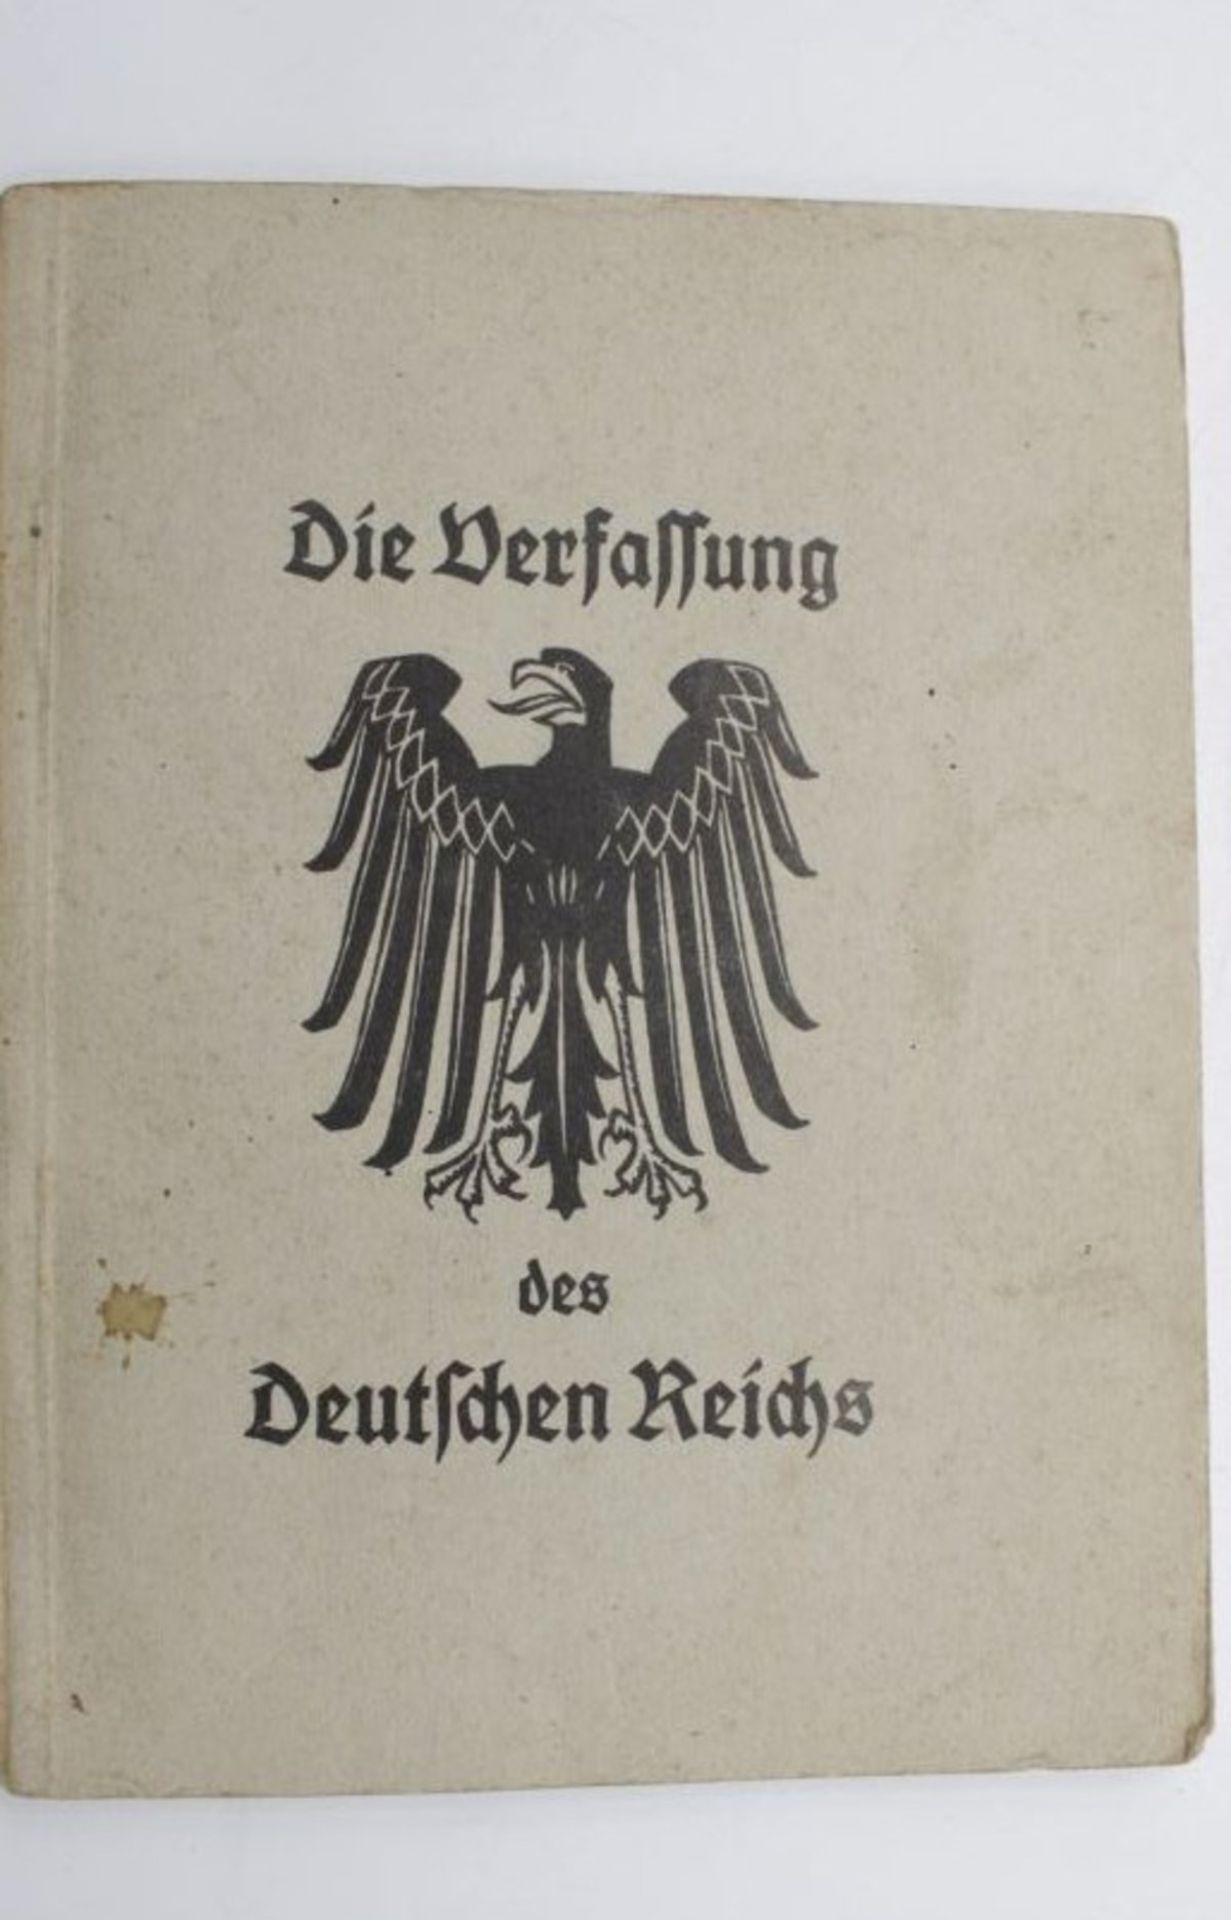 Die Verfassung des Deutschen Reichs vom 11. August 1919.